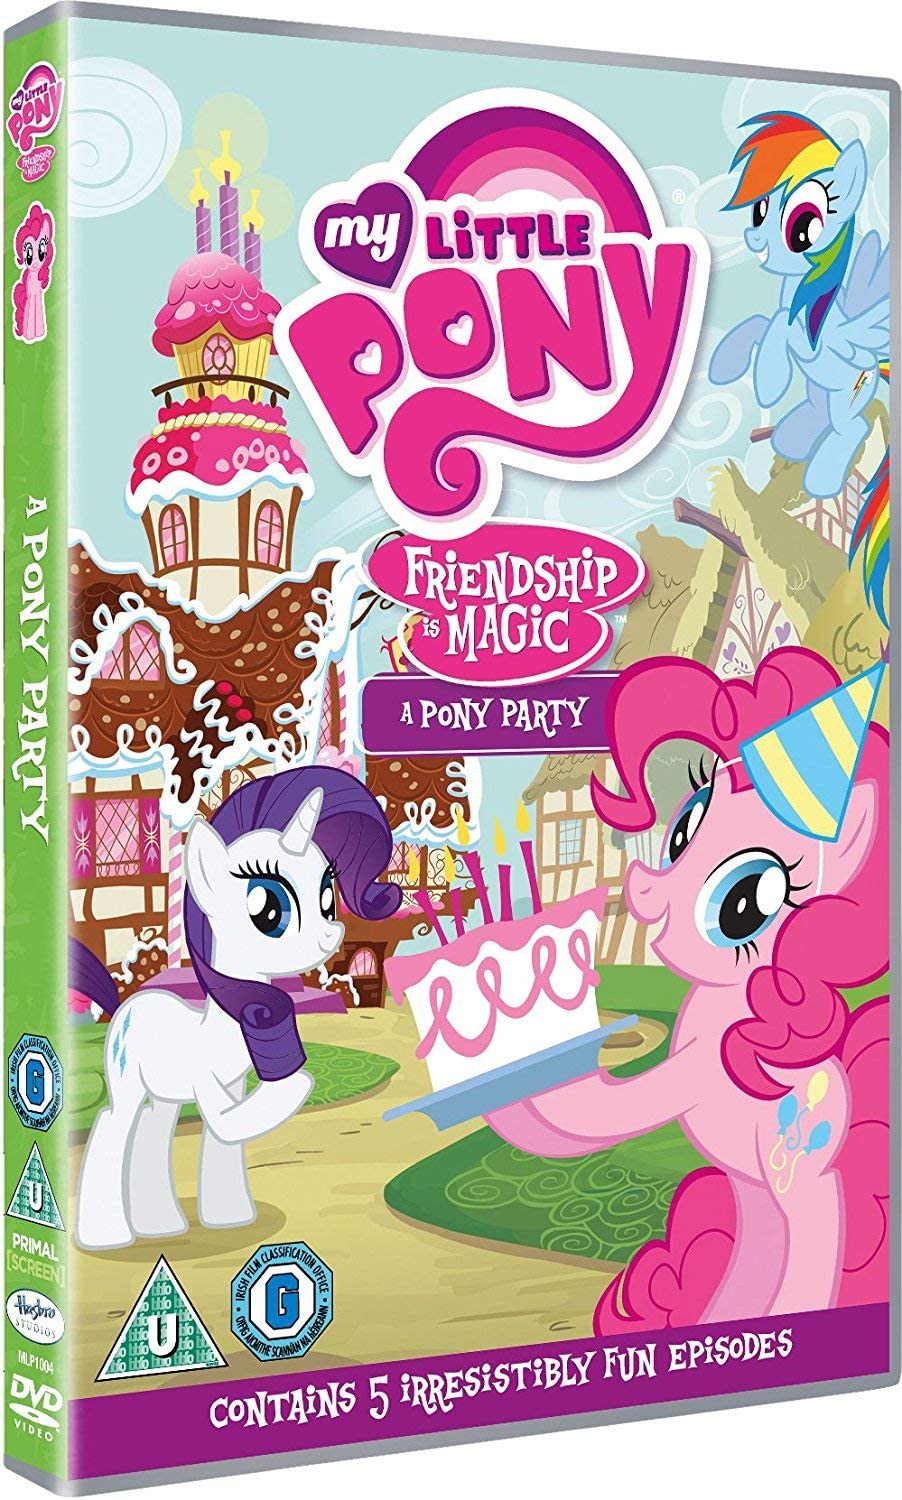 My Little Pony: A Pony Party [2017] - Animation [DVD]